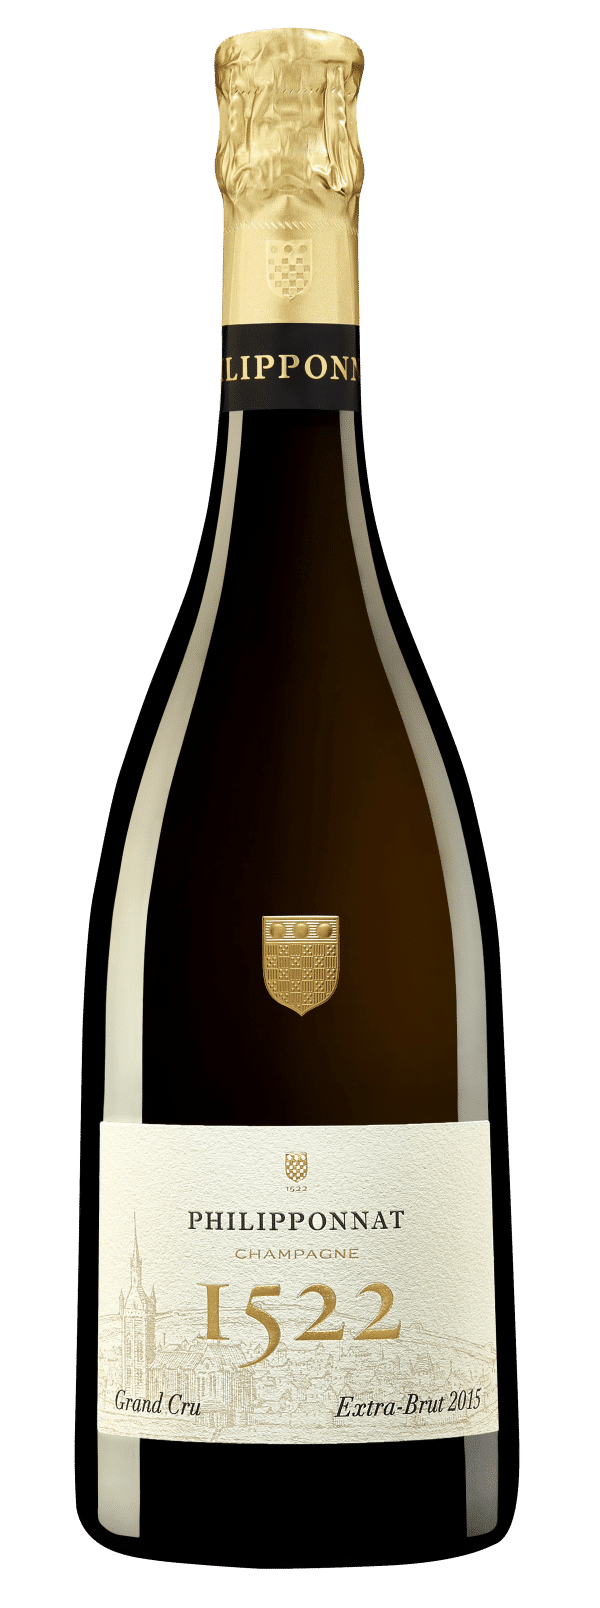 Champagne Philipponnat Cuvee 1522 Grand Cru 2016 Extra-Brut